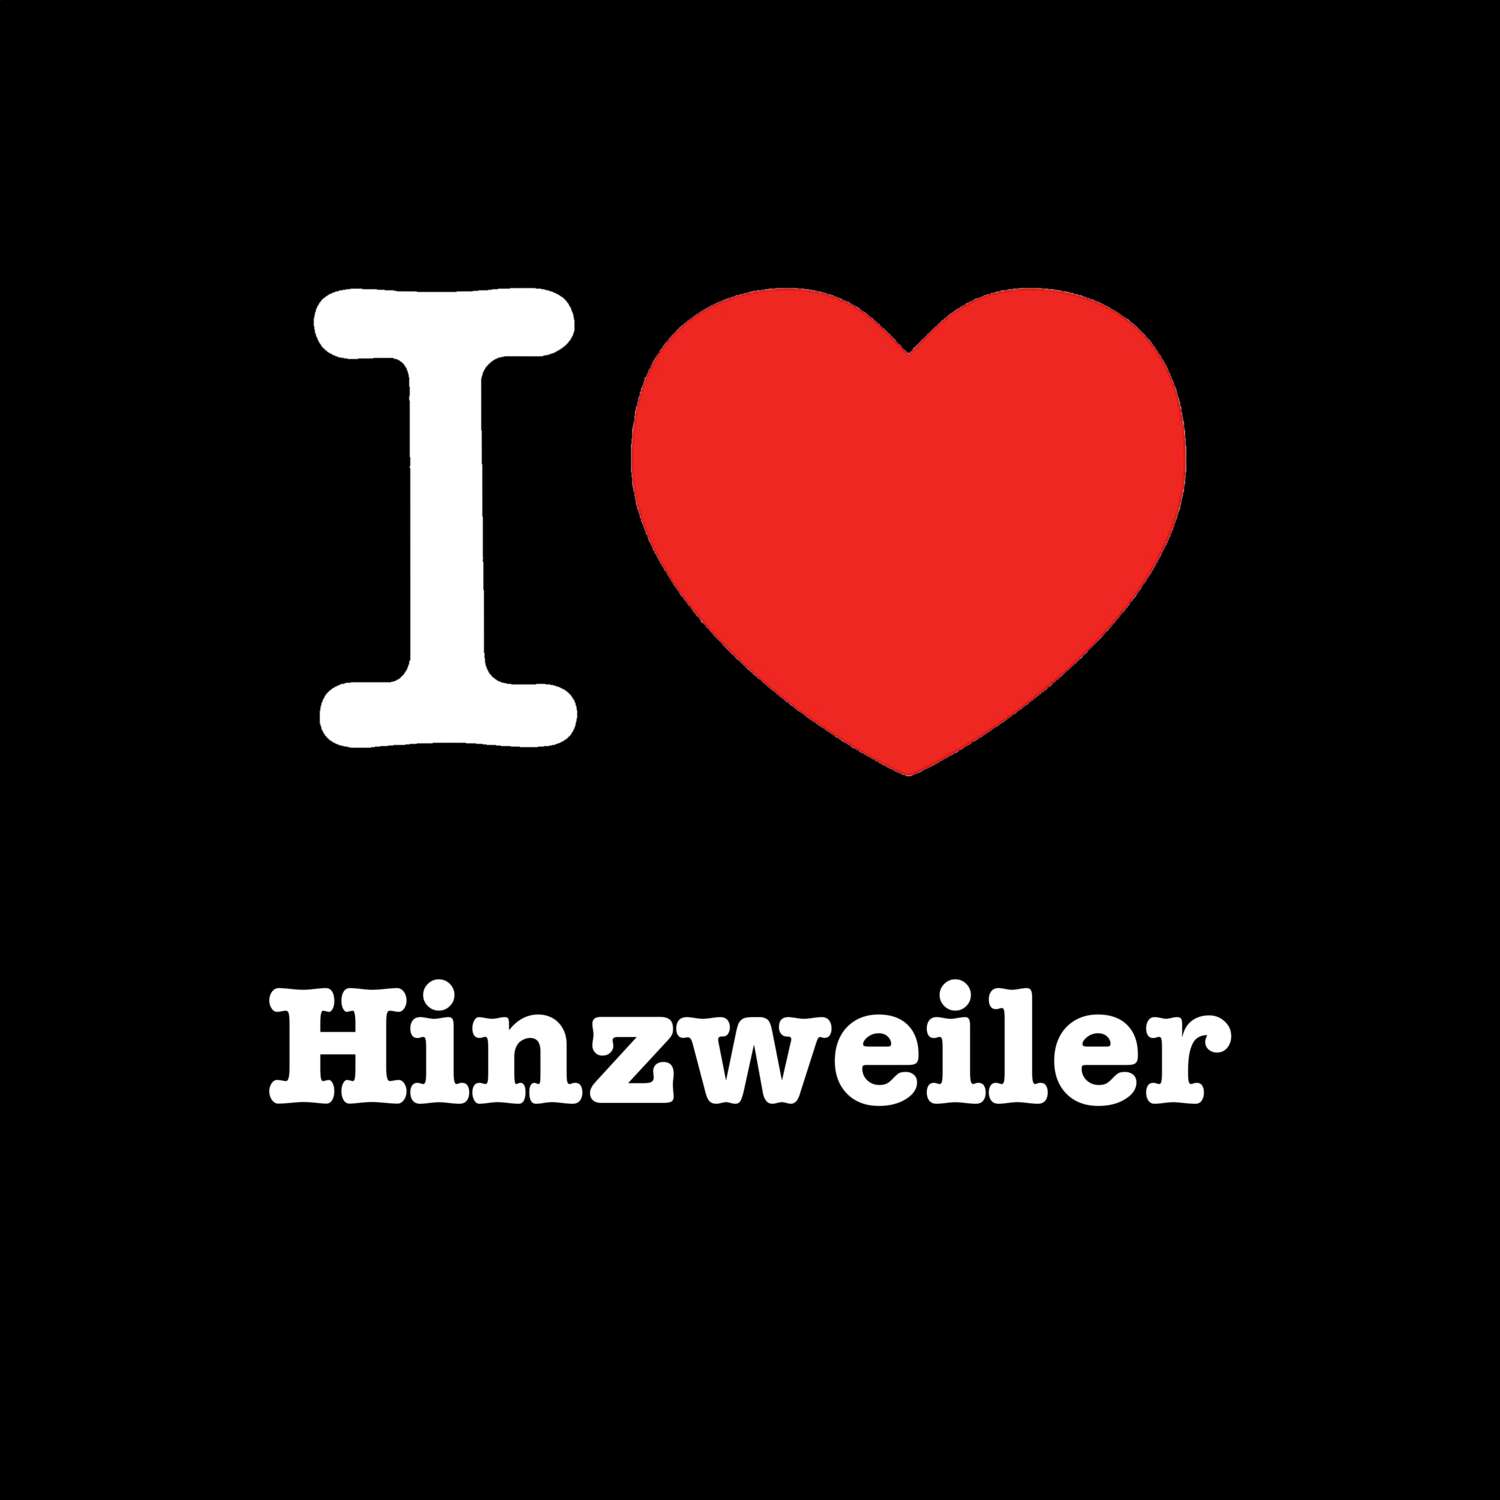 Hinzweiler T-Shirt »I love«